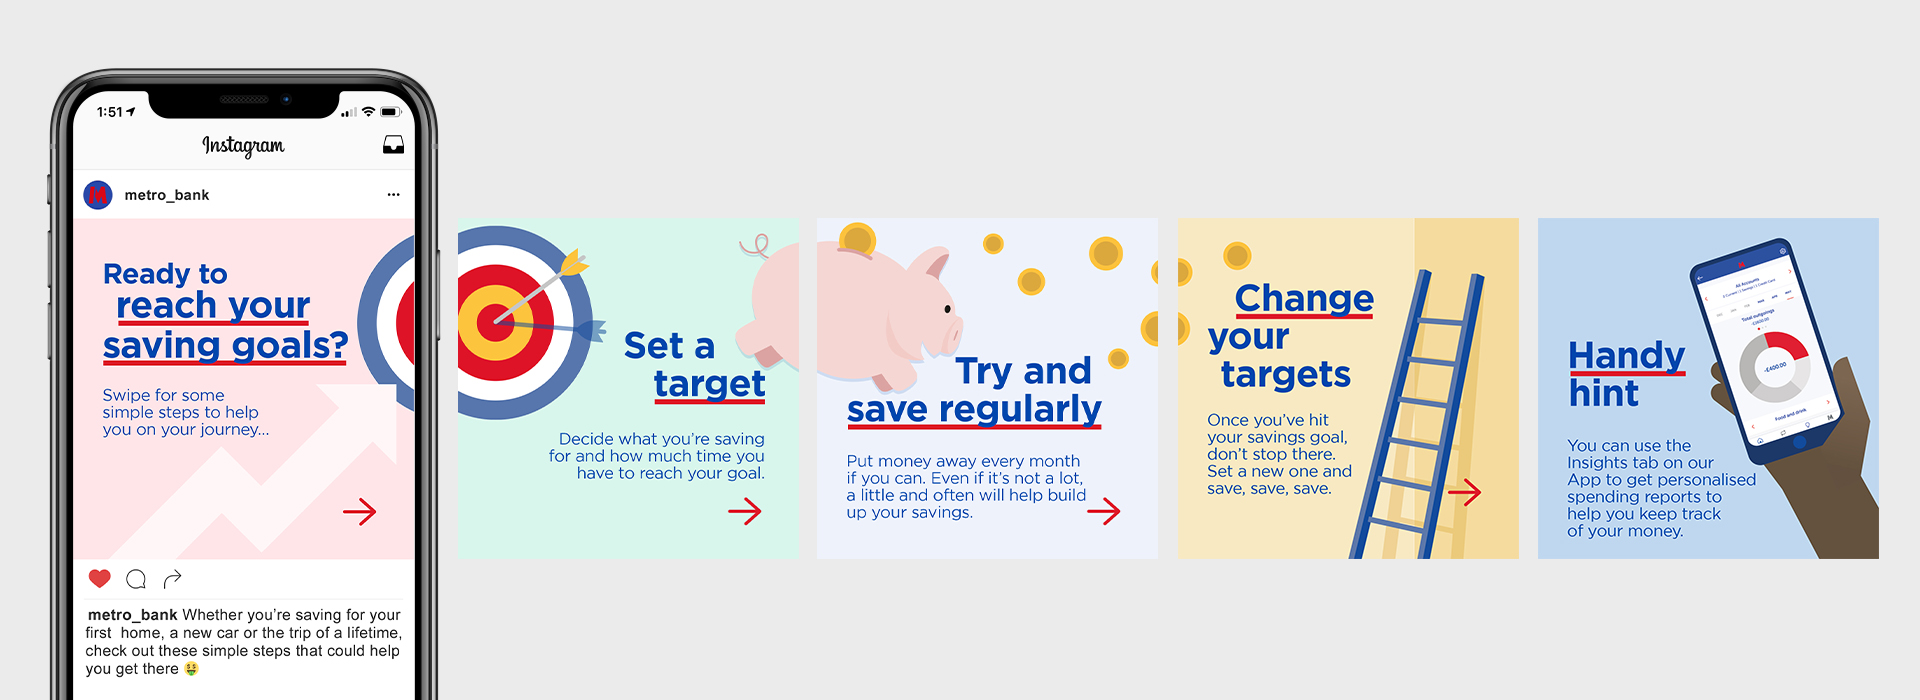 MetroBank-Saving-Tips-Social